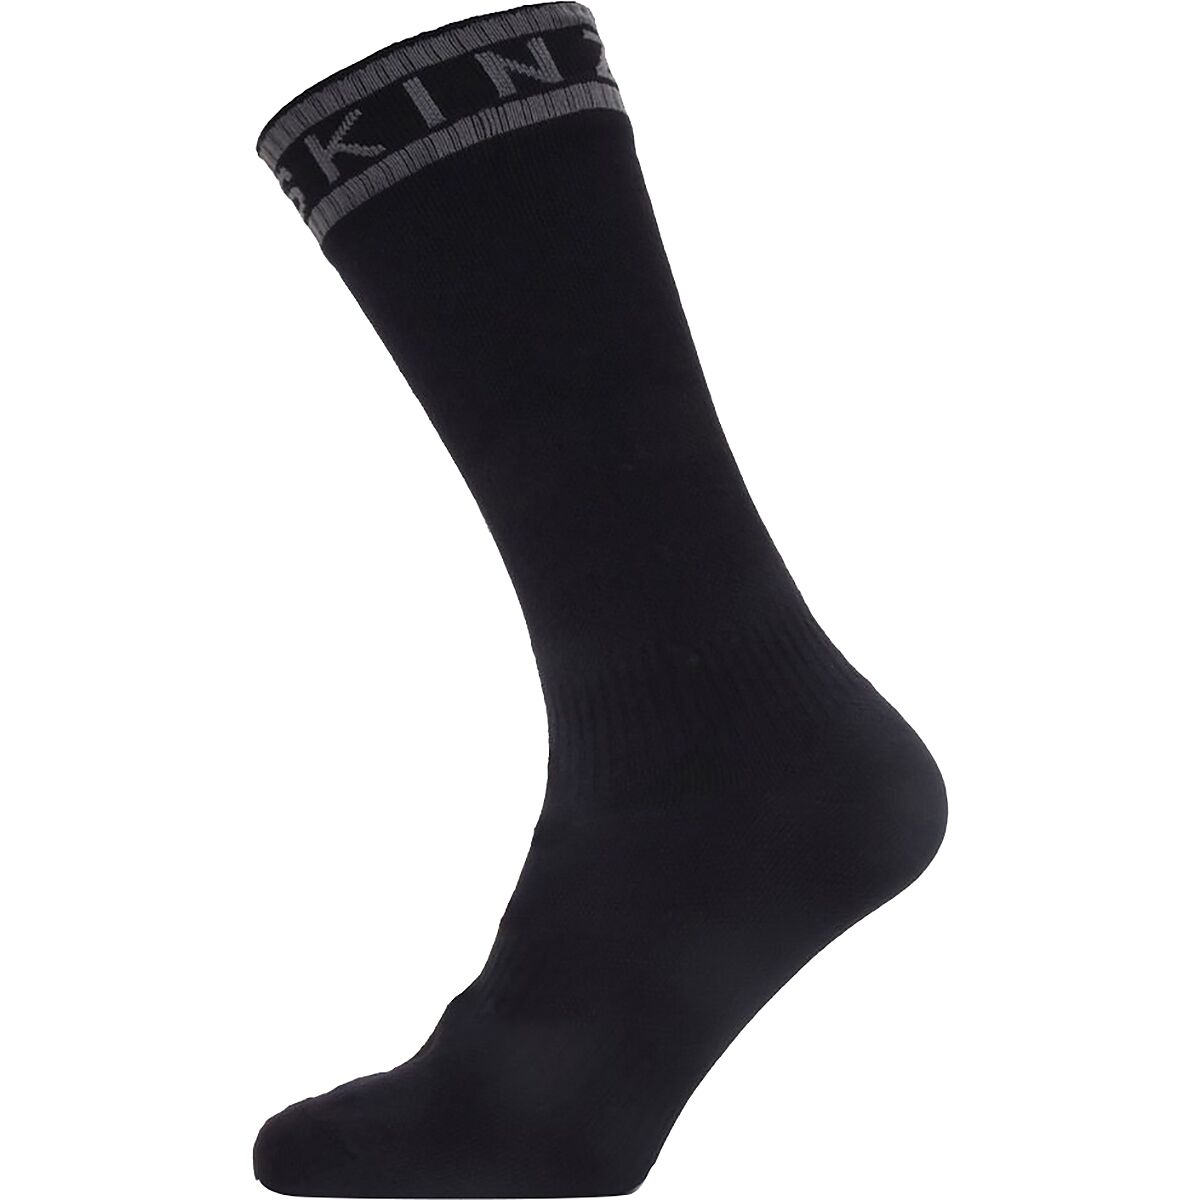 SealSkinz Waterproof Warm Weather Mid Length Sock